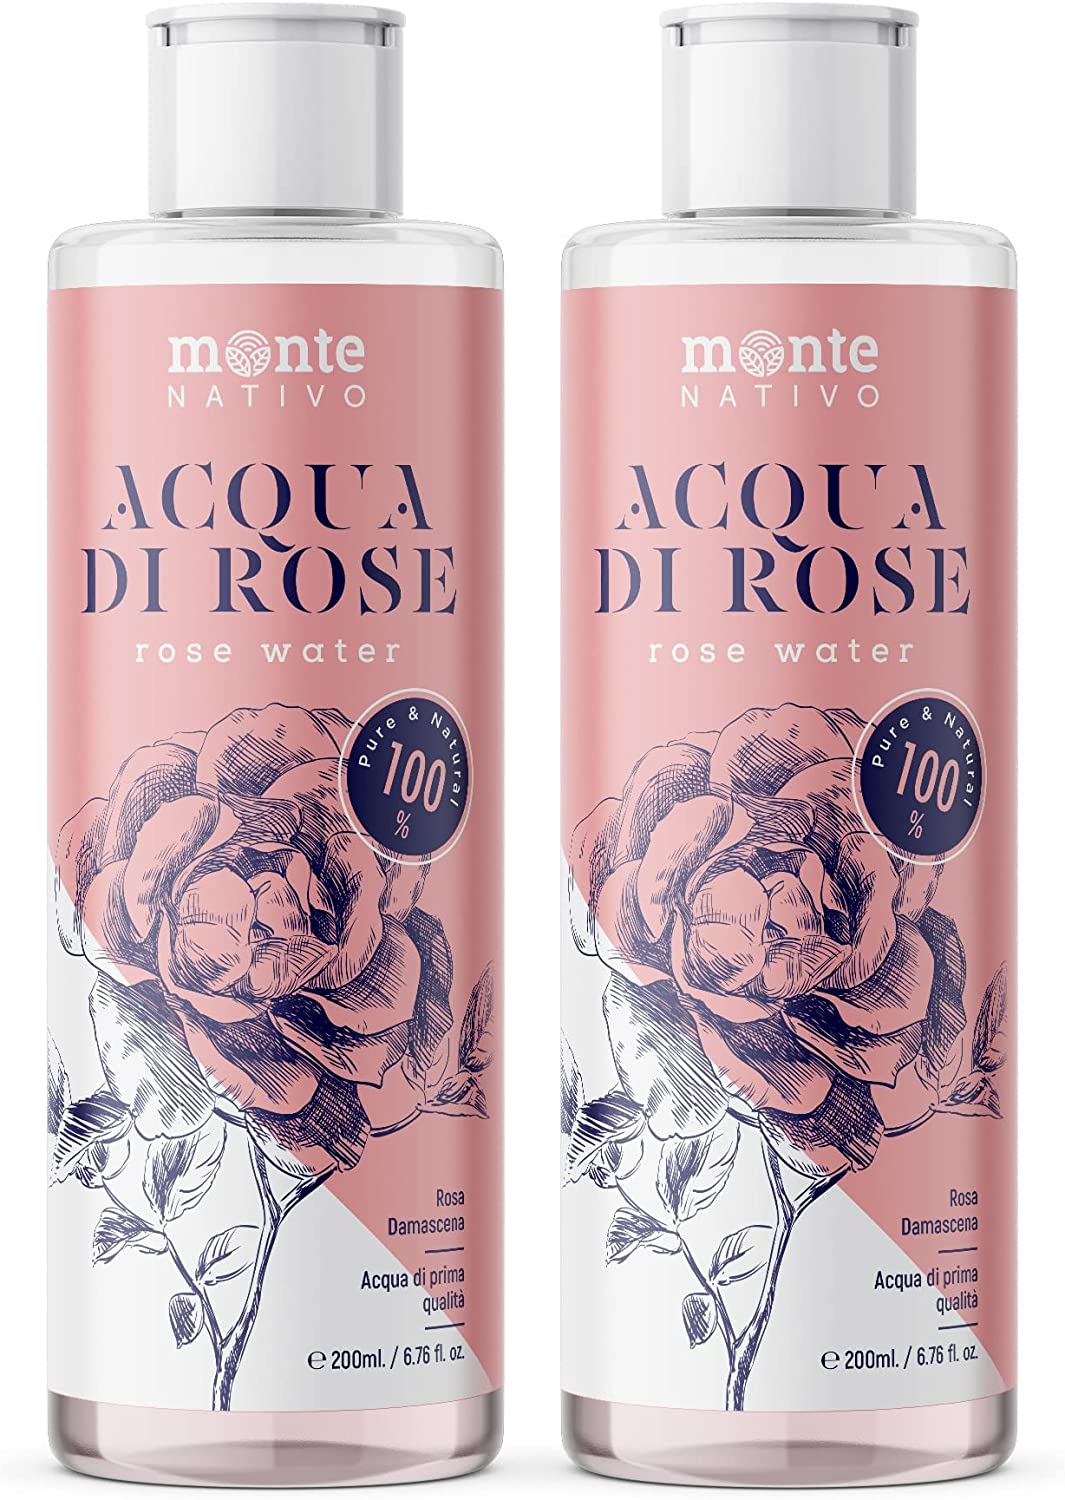 
                                    
                                Prodotti beauty all’acqua di rose: i migliori per idratare e tonificare la pelle